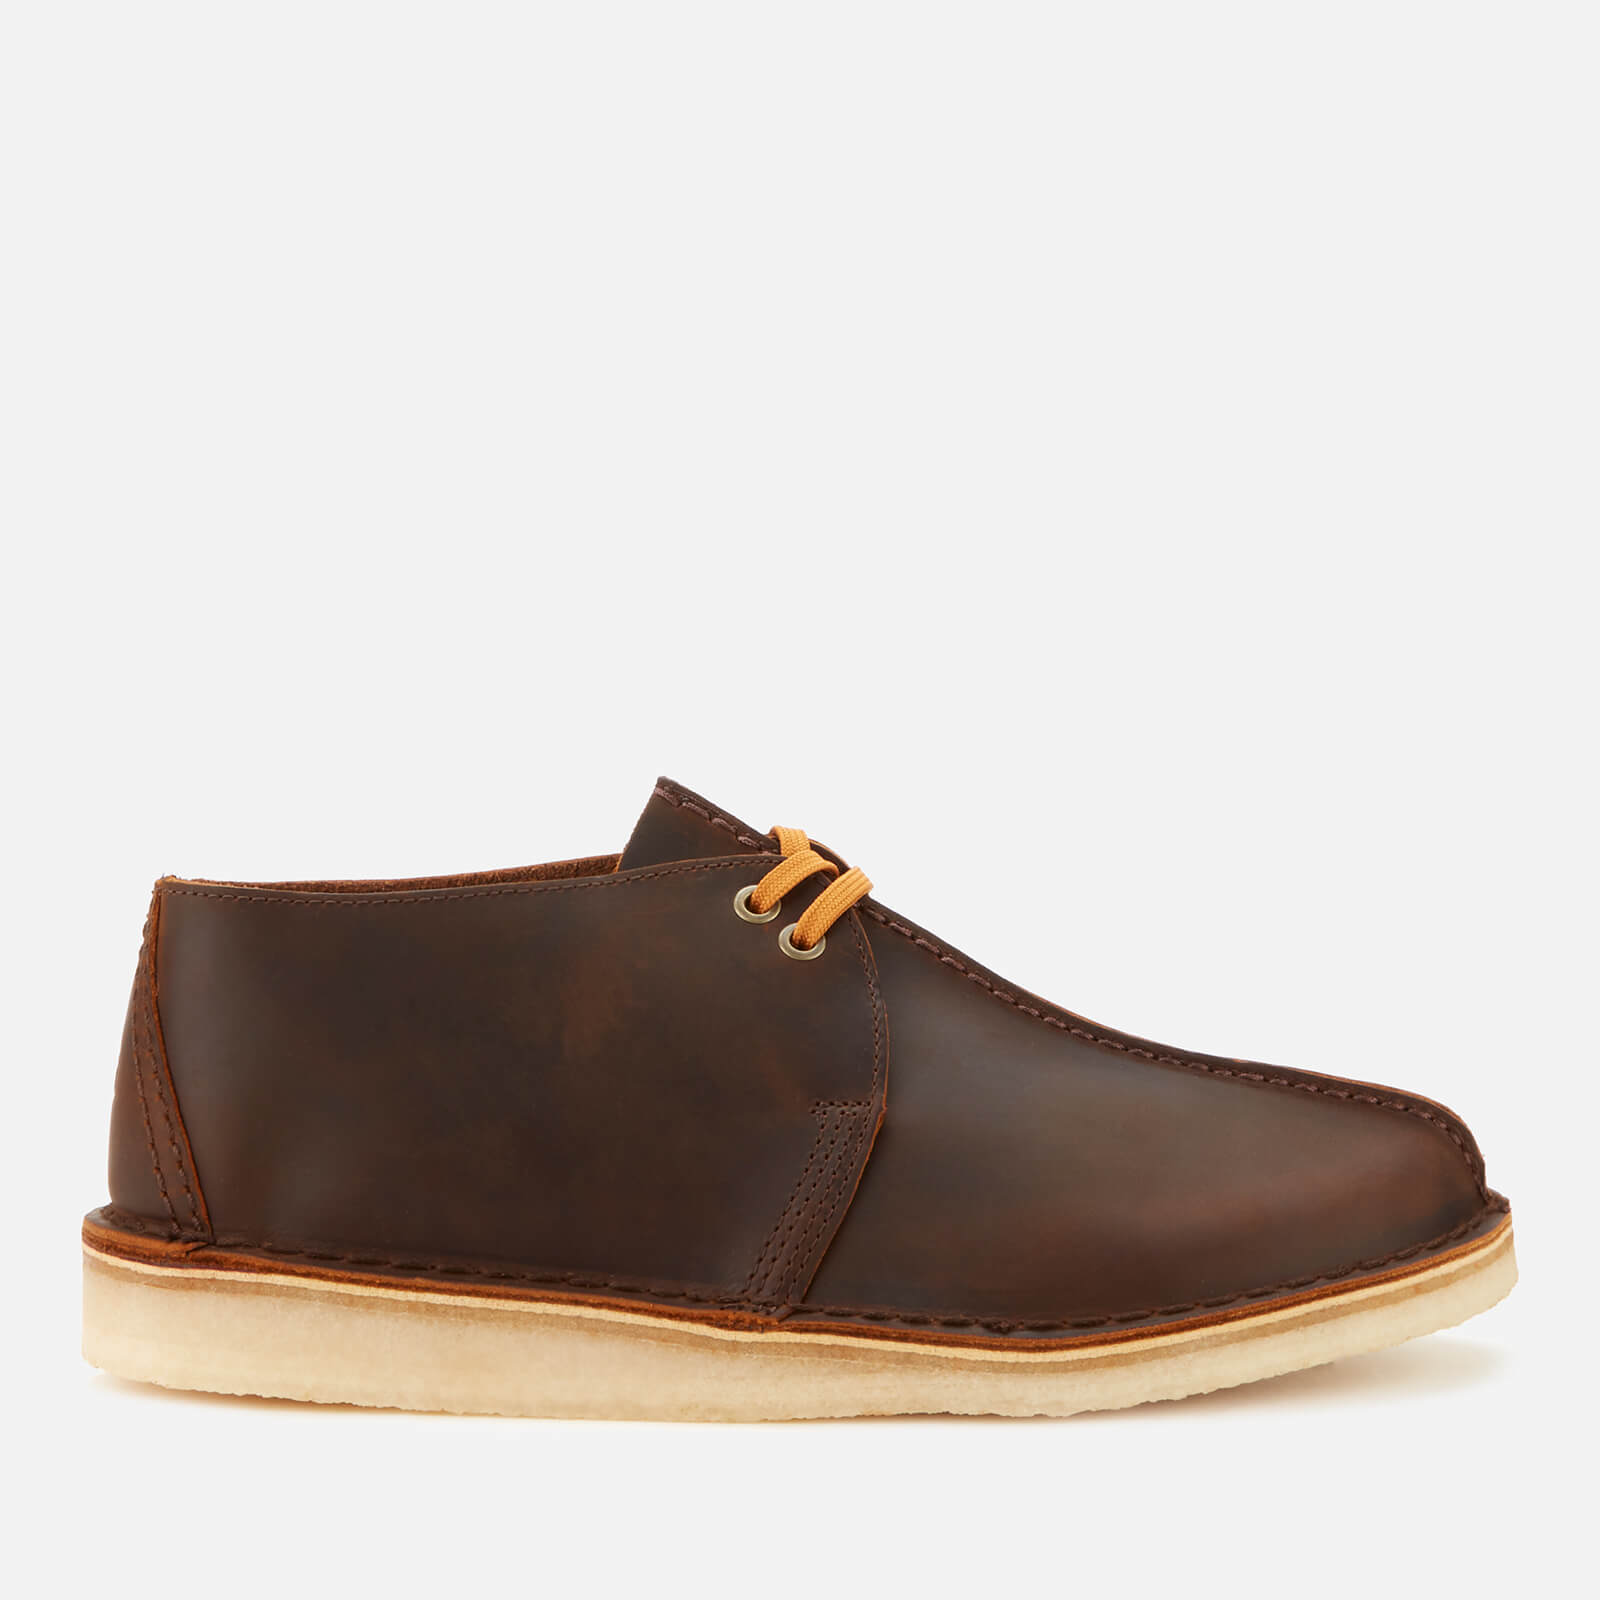 Clarks Originals Men's Desert Trek Leather Shoes - Beeswax - UK 8